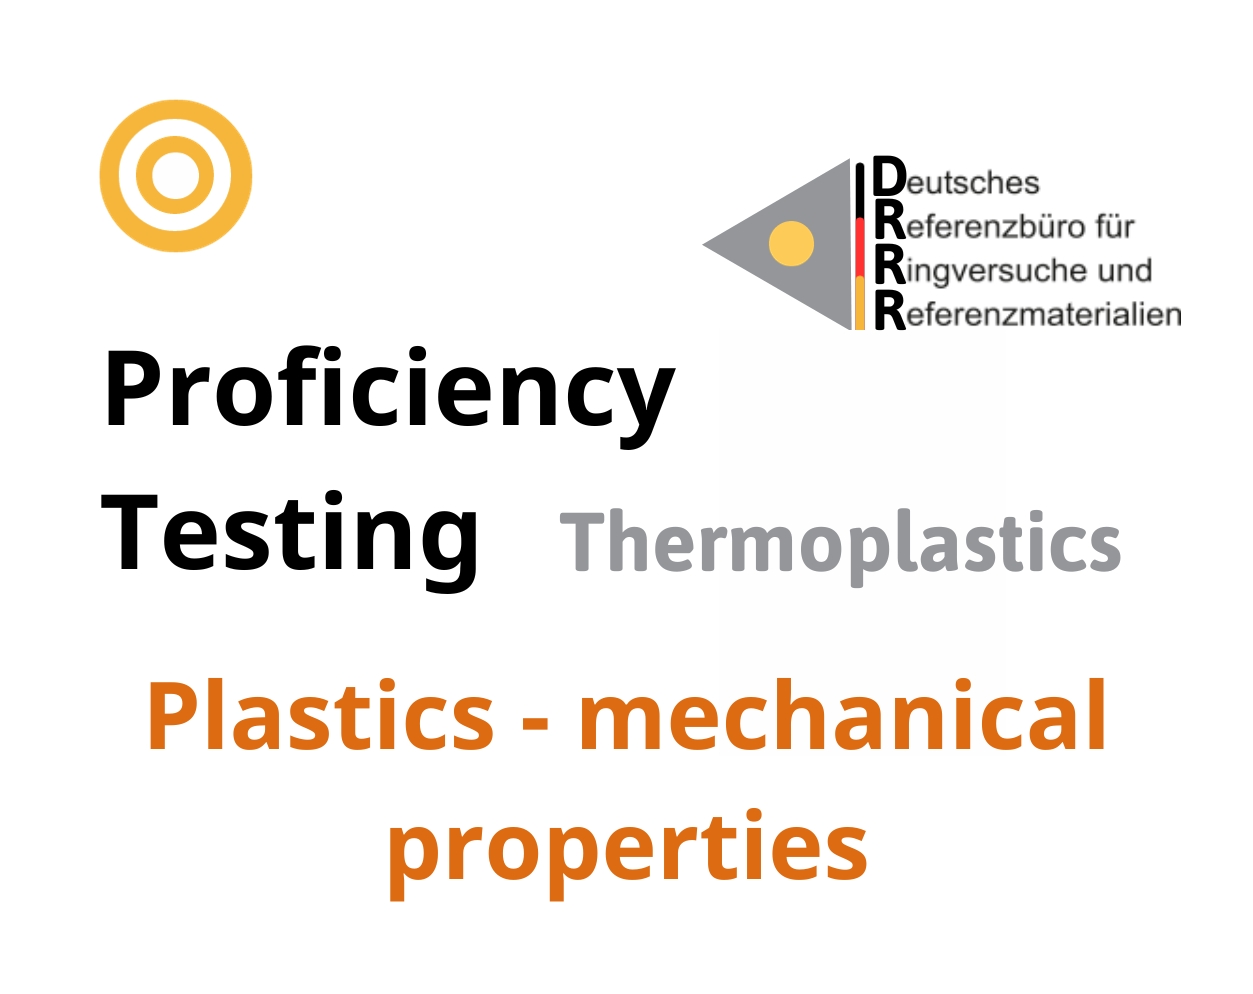 Thử nghiệm thành thạo (ISO 17043) nhựa nhiệt dẻo trên nền mẫu Plastics - mechanical properties, Hãng DRRR, Đức